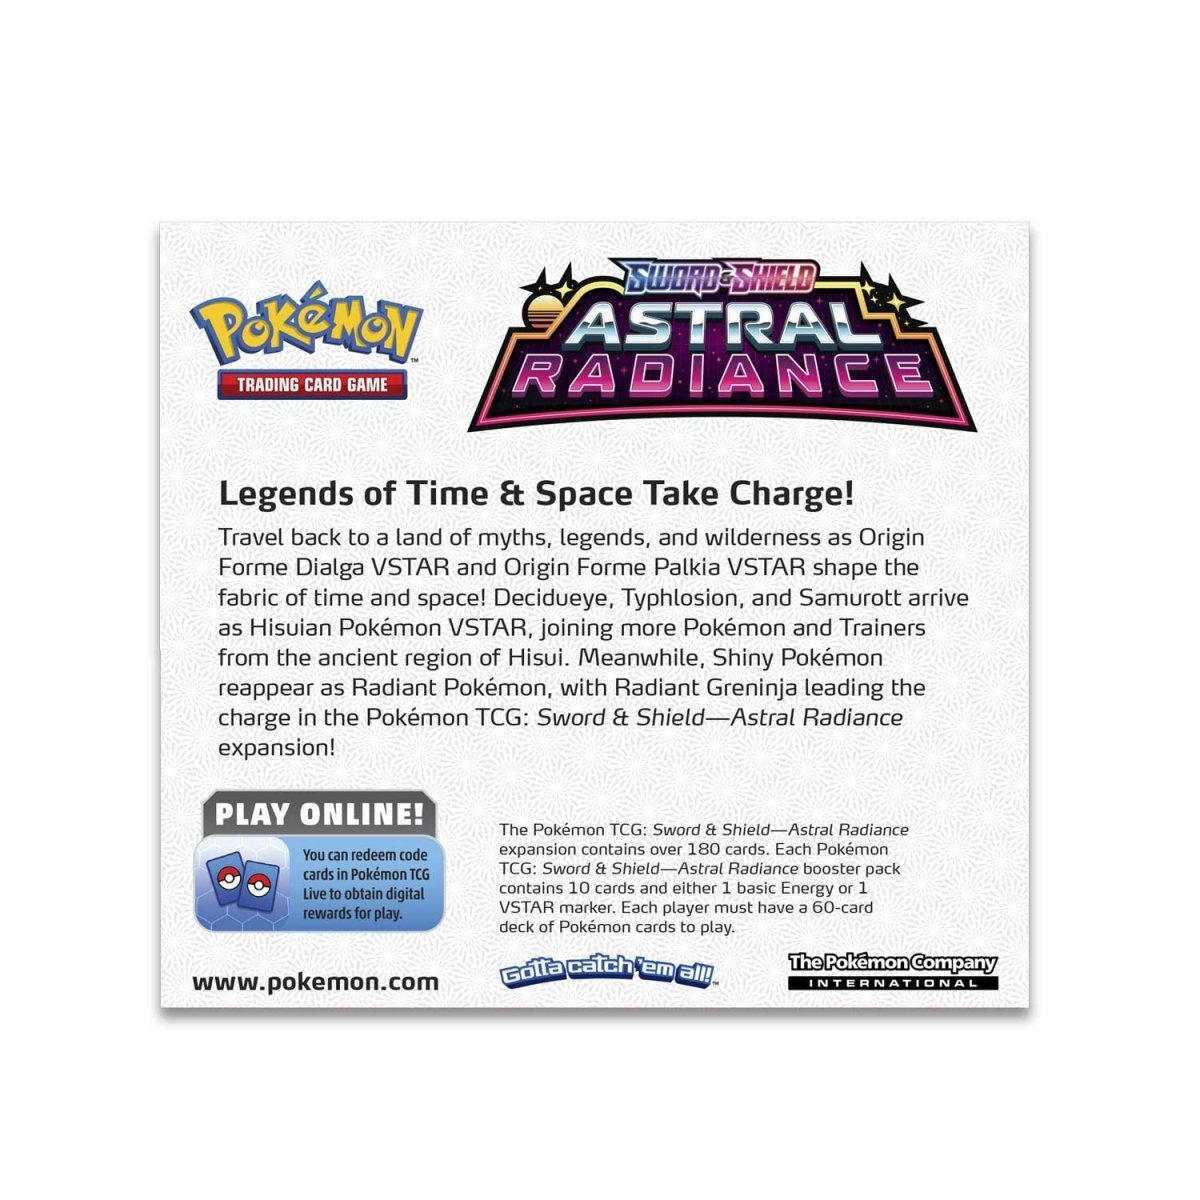 Pokémon Sword and Pokémon Shield - Material - The Pokémon Company  International Official Press Site